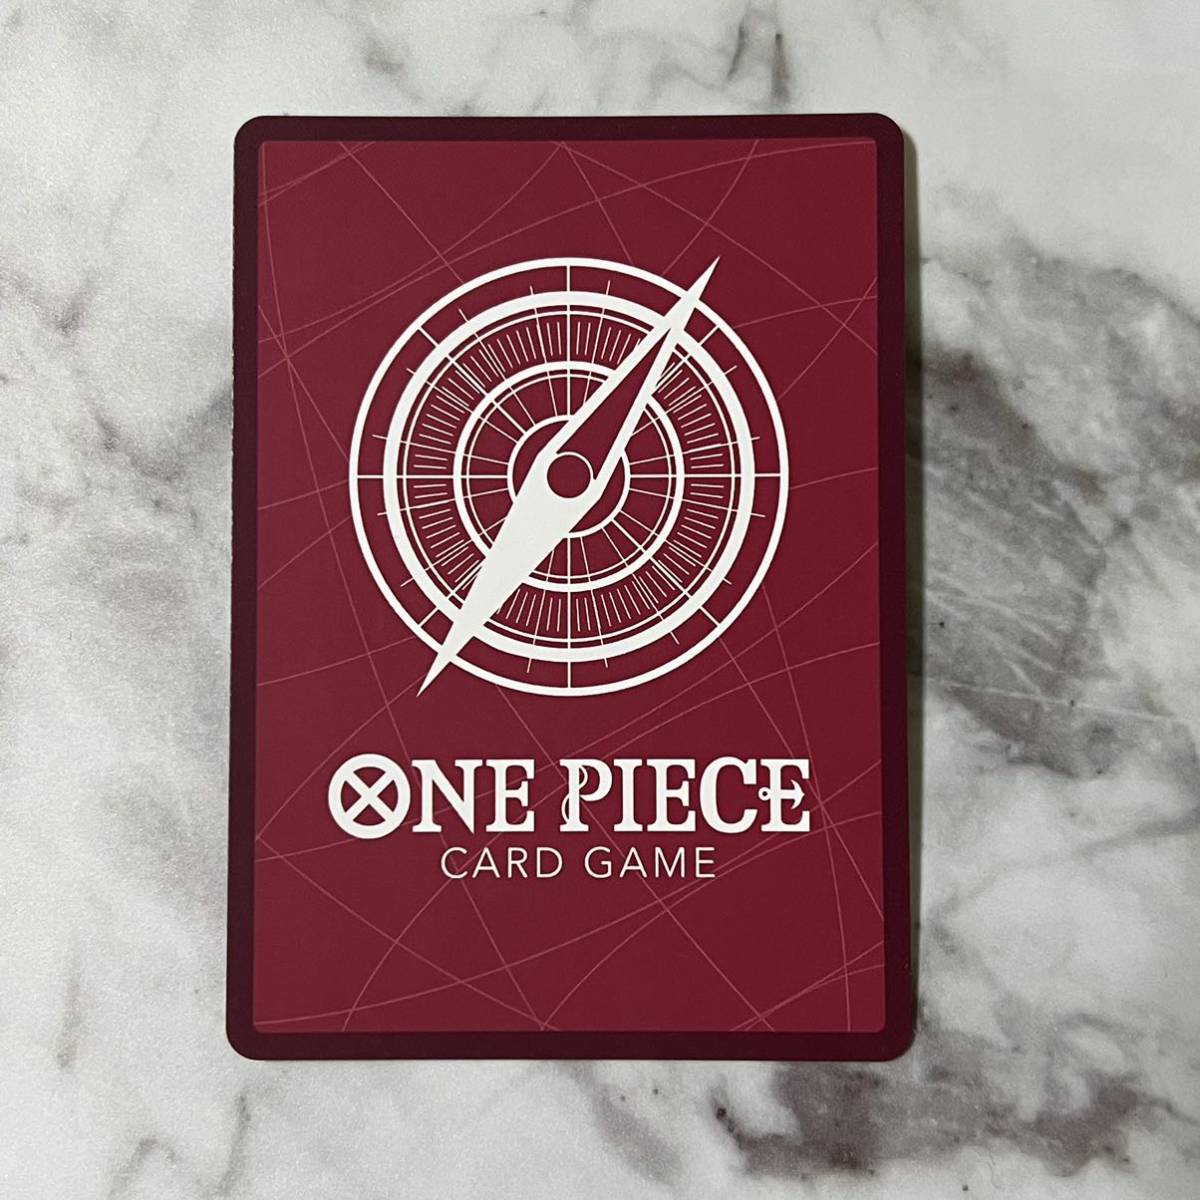 ONE PIECE ワンピース カードゲーム 強大な敵 レア カード L リーダーカード パラレル OP03-021 クロ 東の海 / クロネコ海賊団